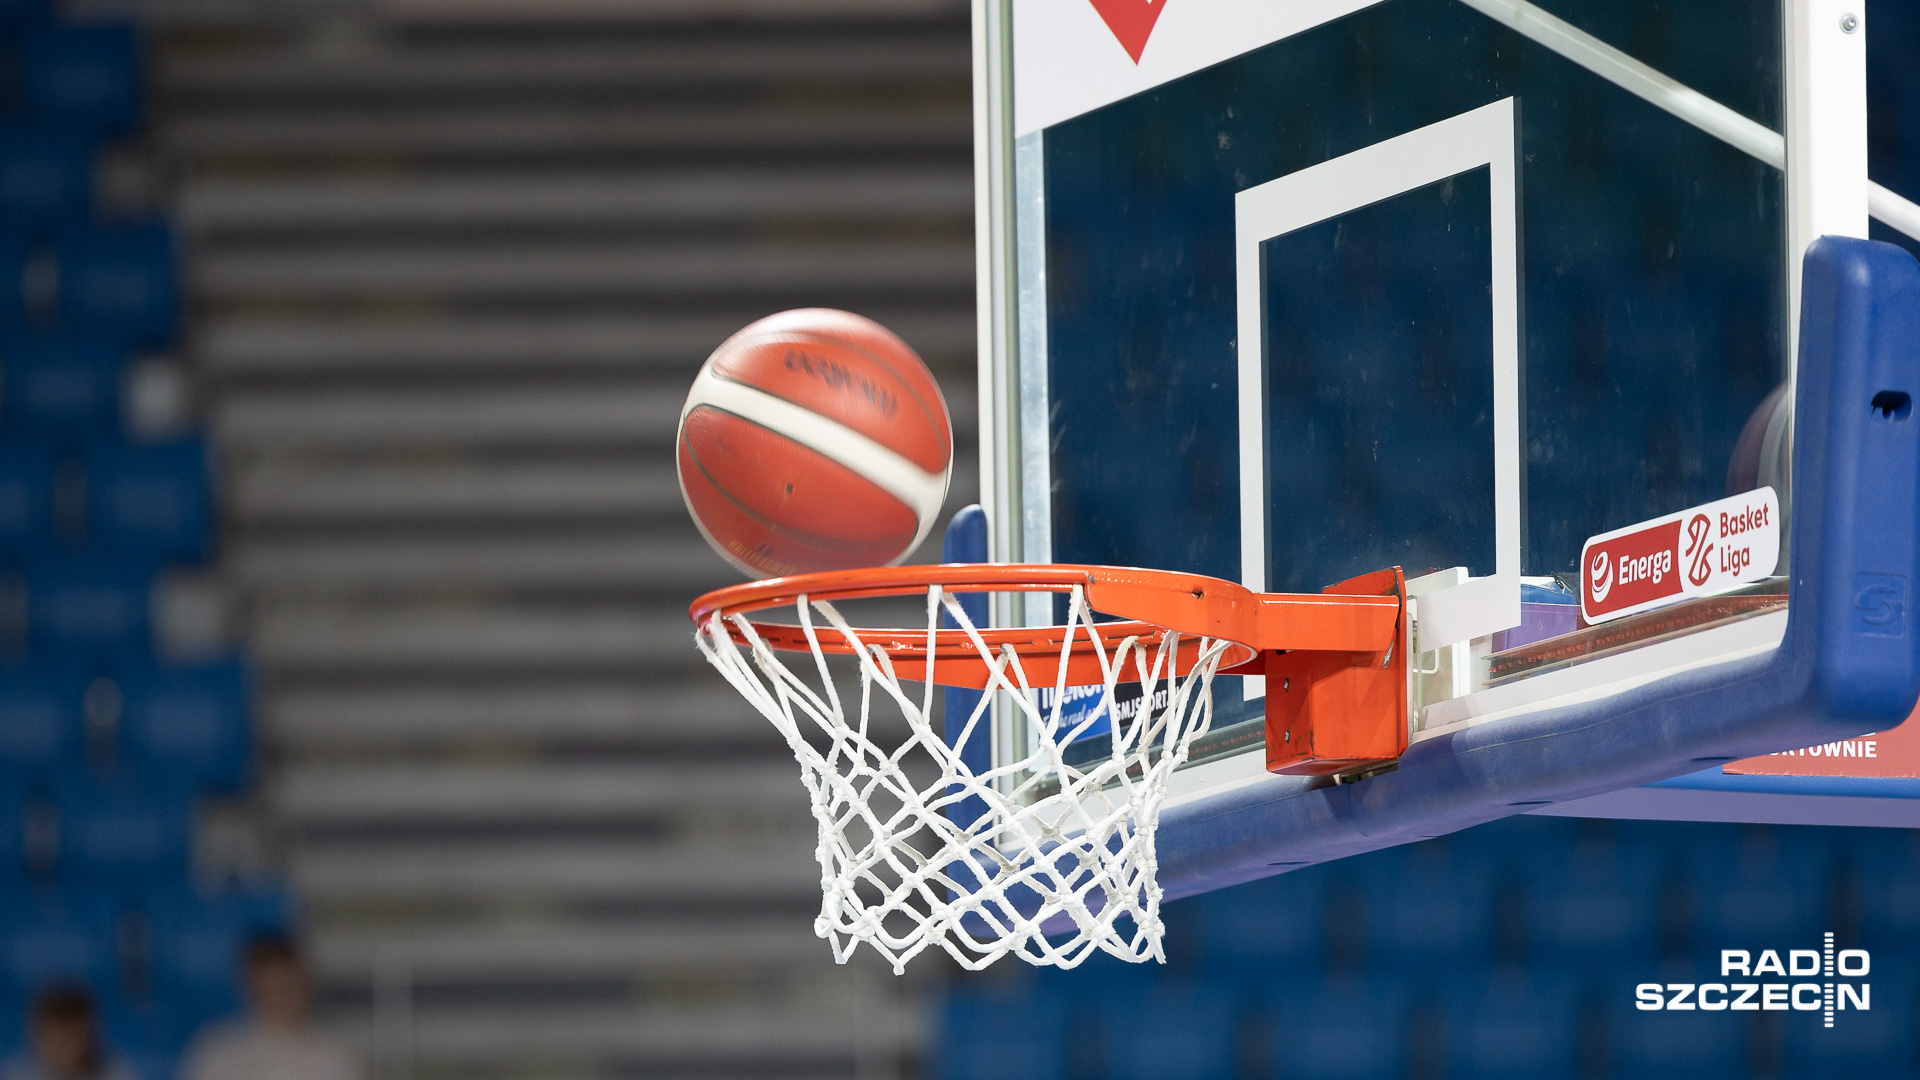 Koszykarze PGE Spójni chcą sprawić swoim kibicom świąteczny prezent i odnieść w piątek zwycięstwo w rozgrywkach o mistrzostwo Polski. Stargardzianie zmierzą się na wyjeździe z MKS-em Dąbrowa Górnicza w 13. kolejce Energa Basket Ligi.